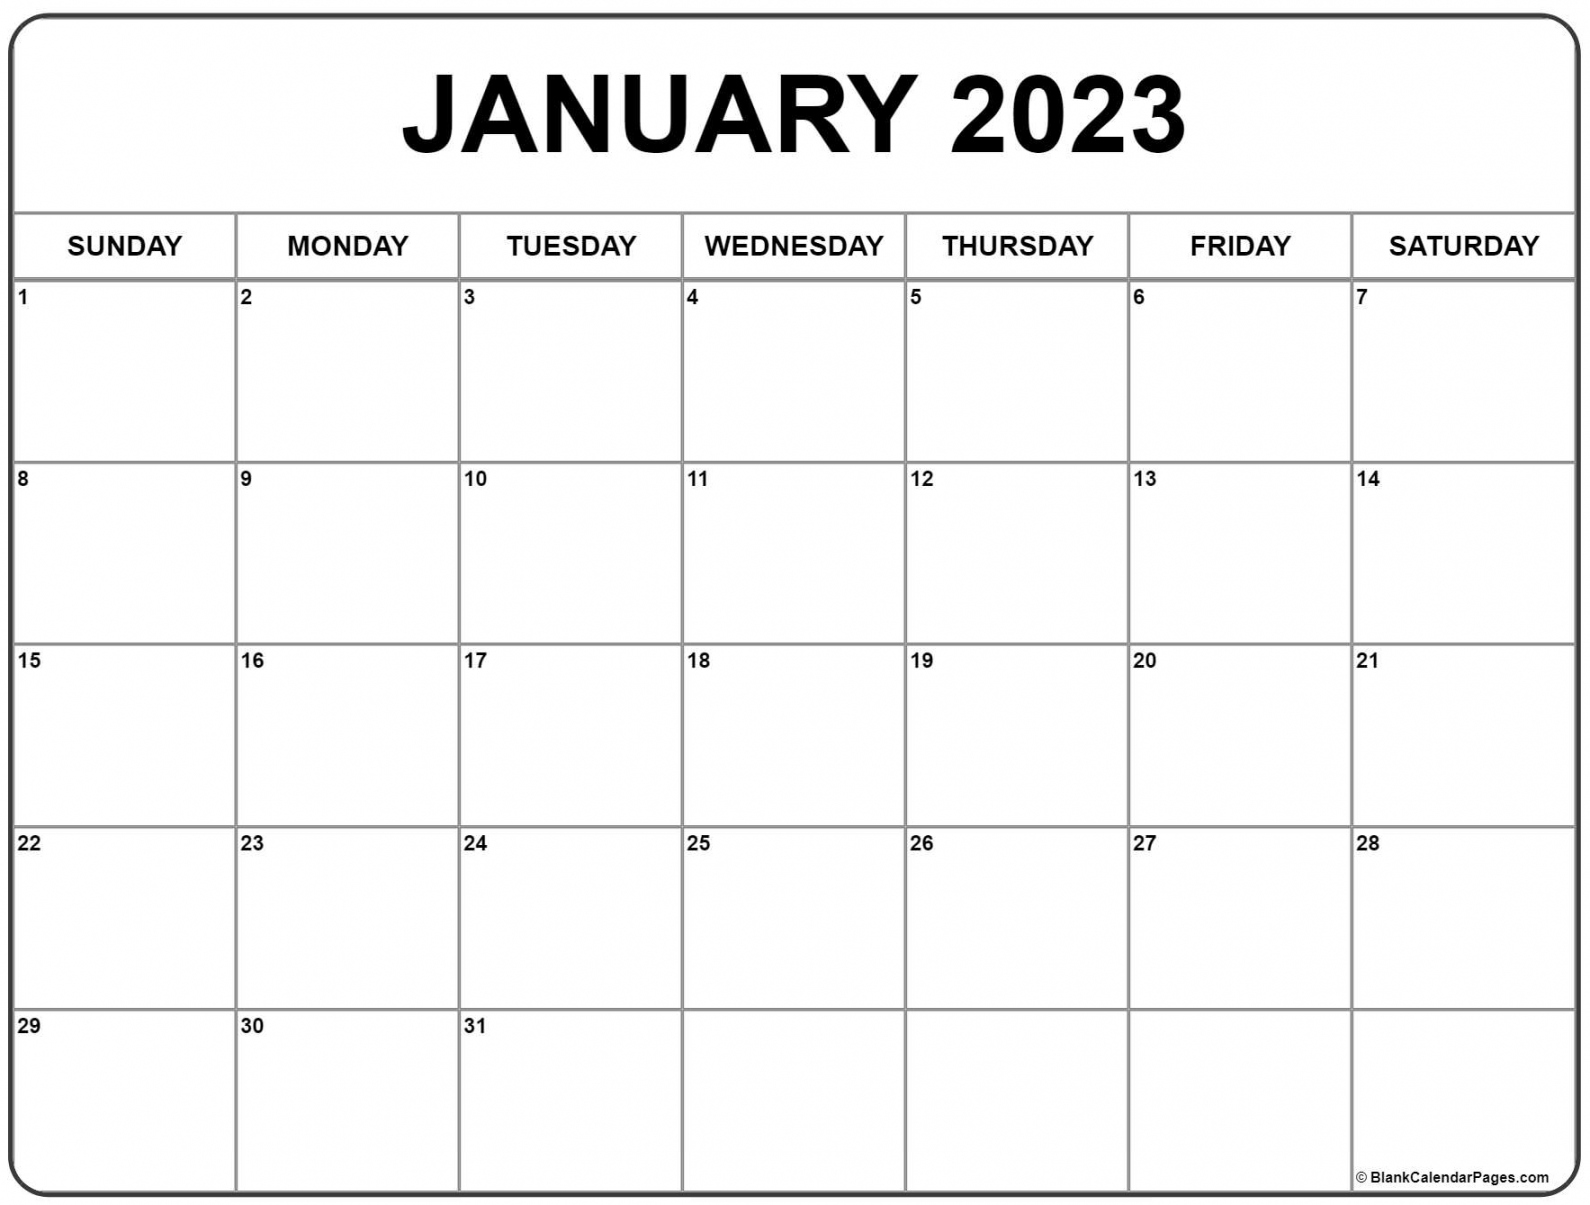 Free Printable January 2023 Calendar - Printable - January  calendar  free printable calendar